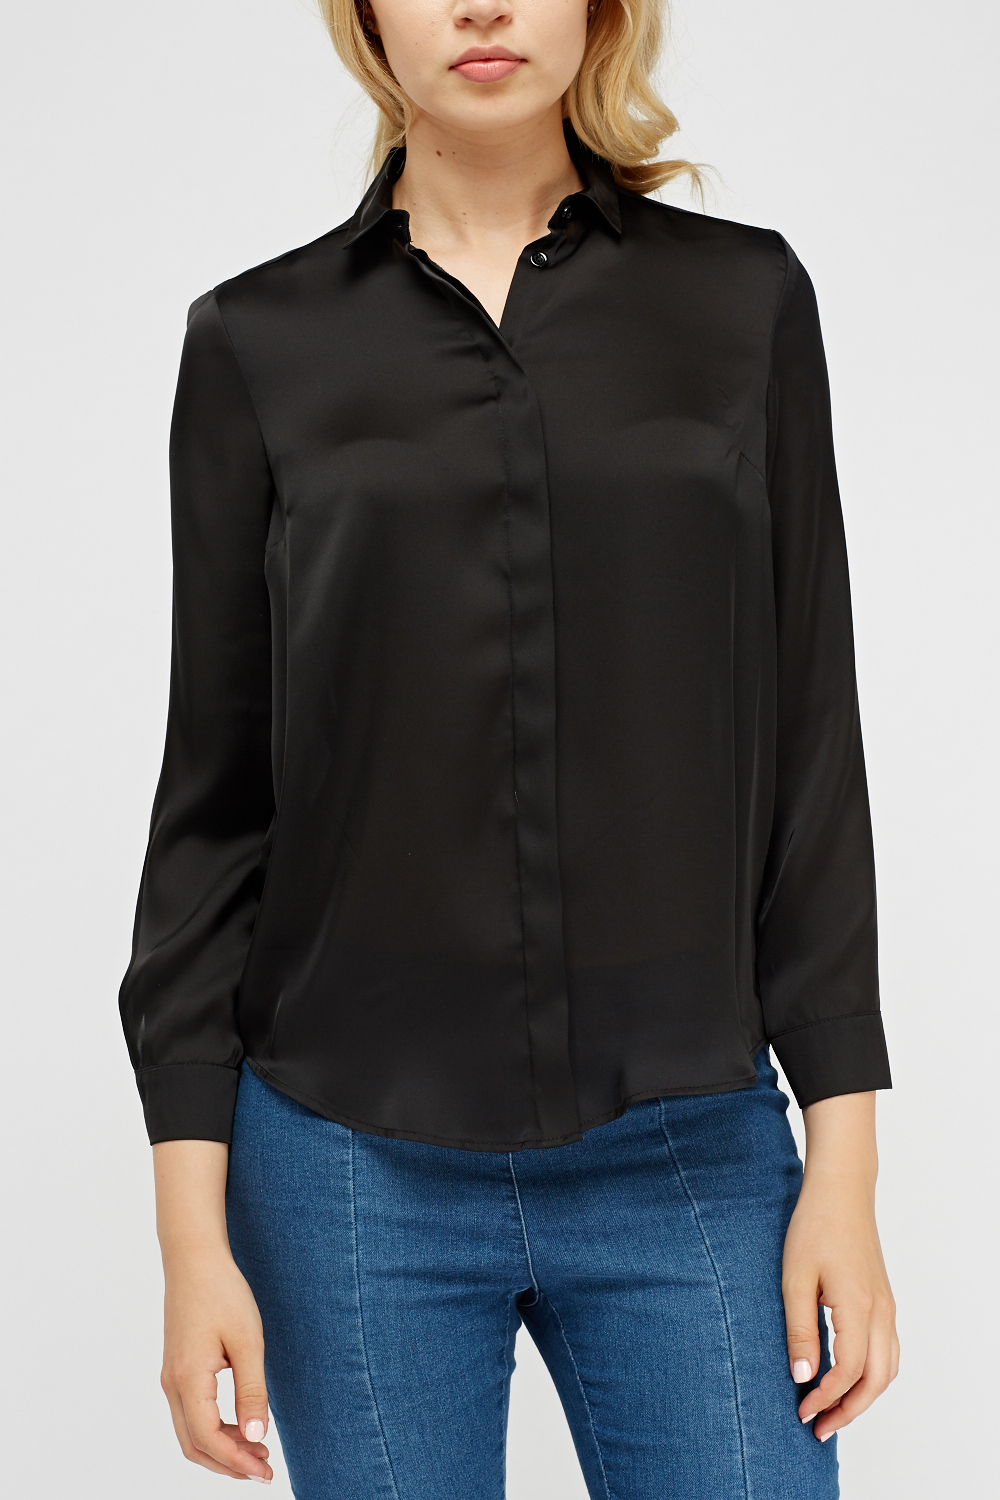 Black Sheer Long Sleeve Blouse - Just $6